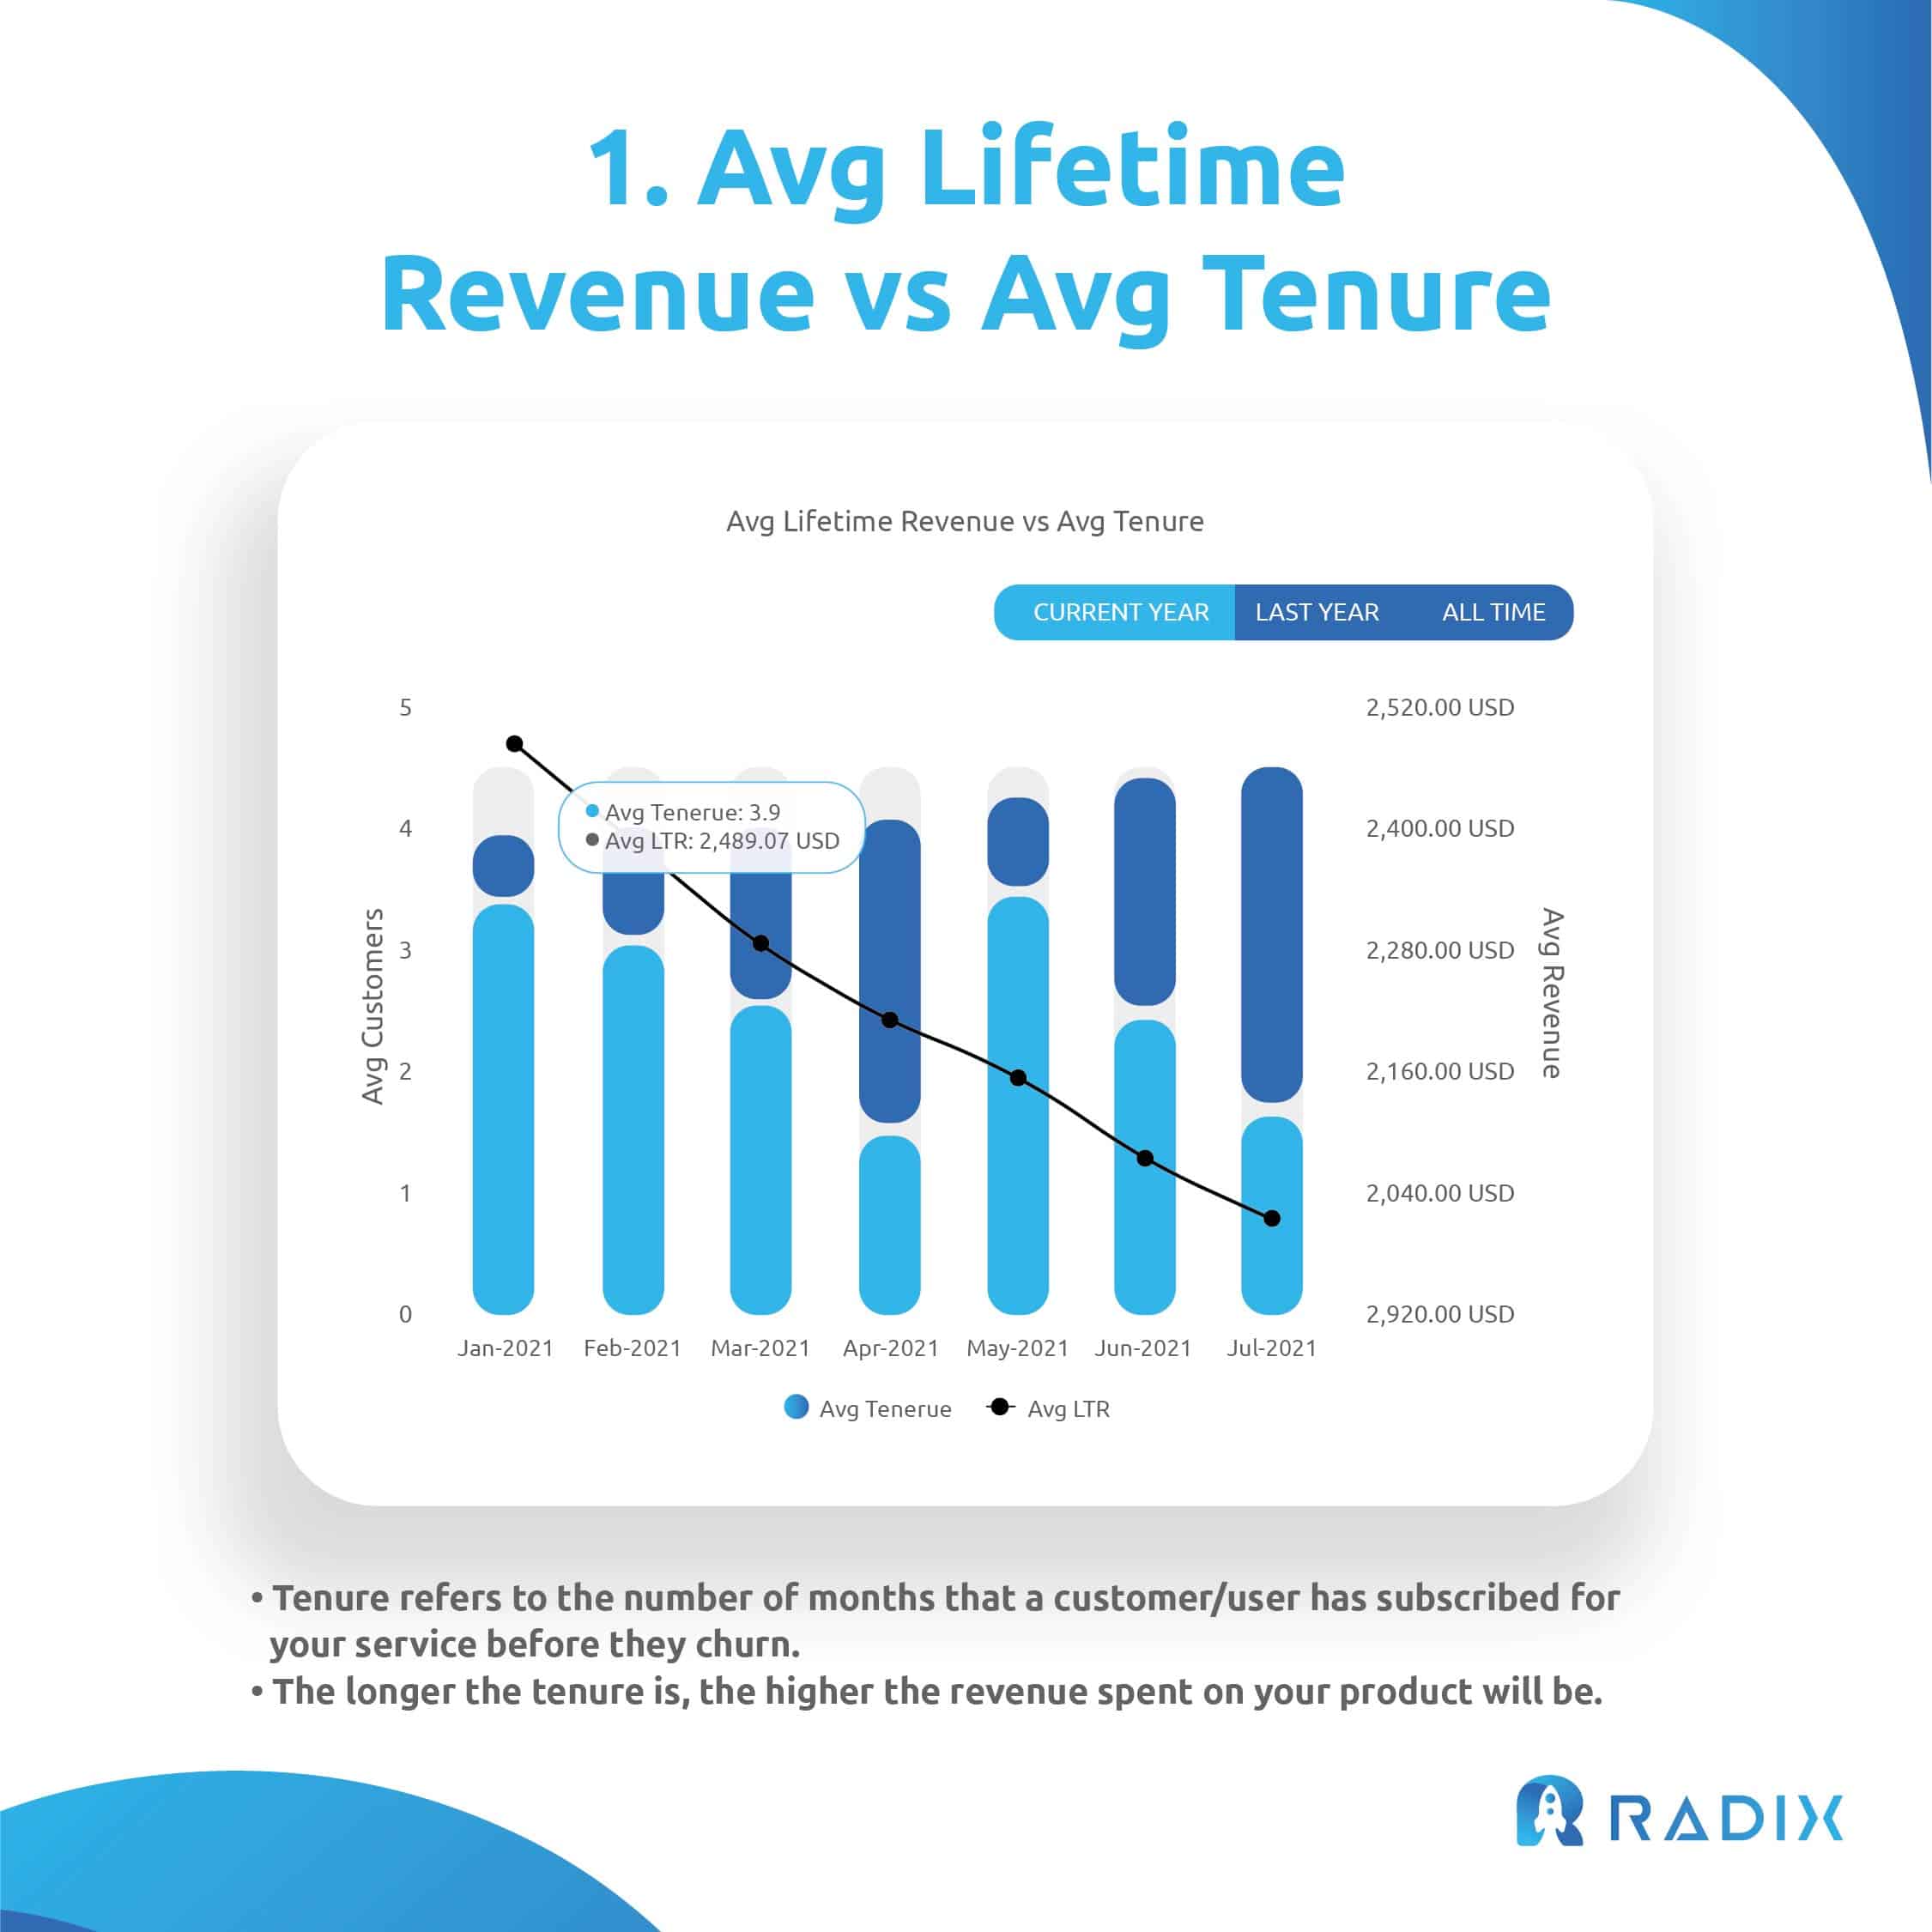 Avg Lifetime Revenue vs Avg Tenure